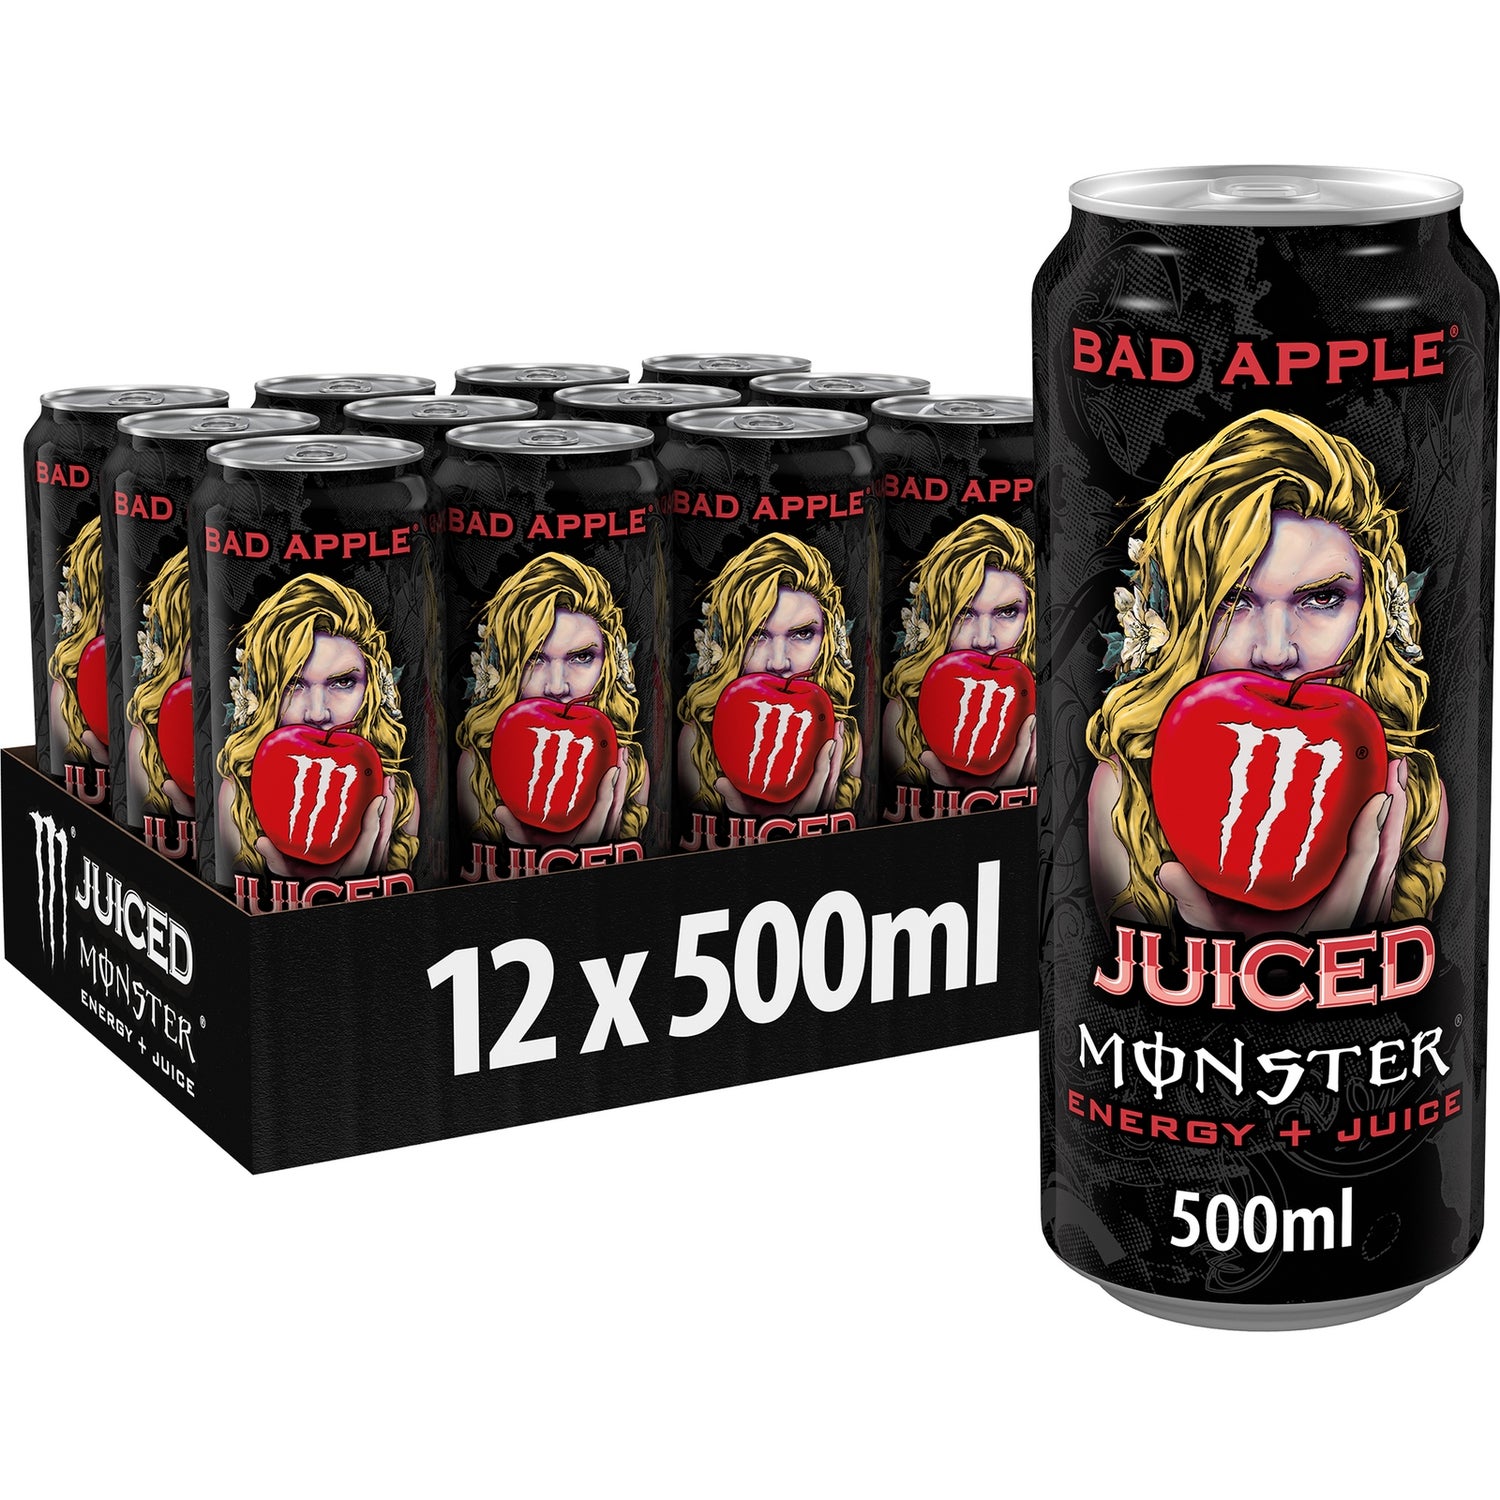 Monster Energy Drink Bad Apple 12 x 500ml